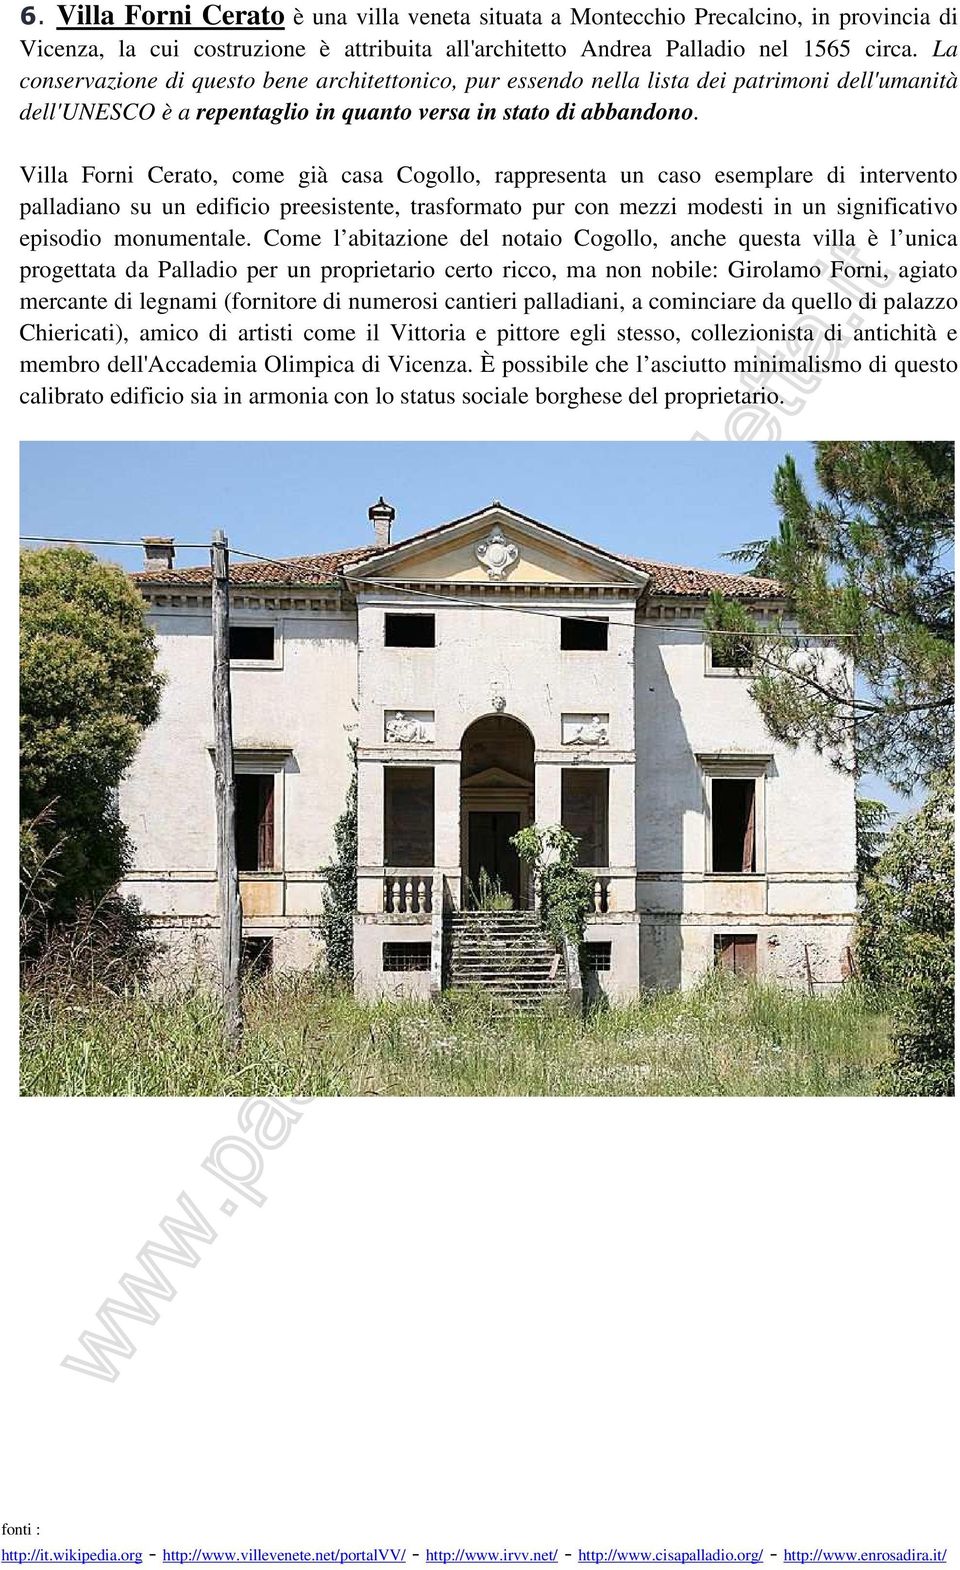 Villa Forni Cerato, come già casa Cogollo, rappresenta un caso esemplare di intervento palladiano su un edificio preesistente, trasformato pur con mezzi modesti in un significativo episodio